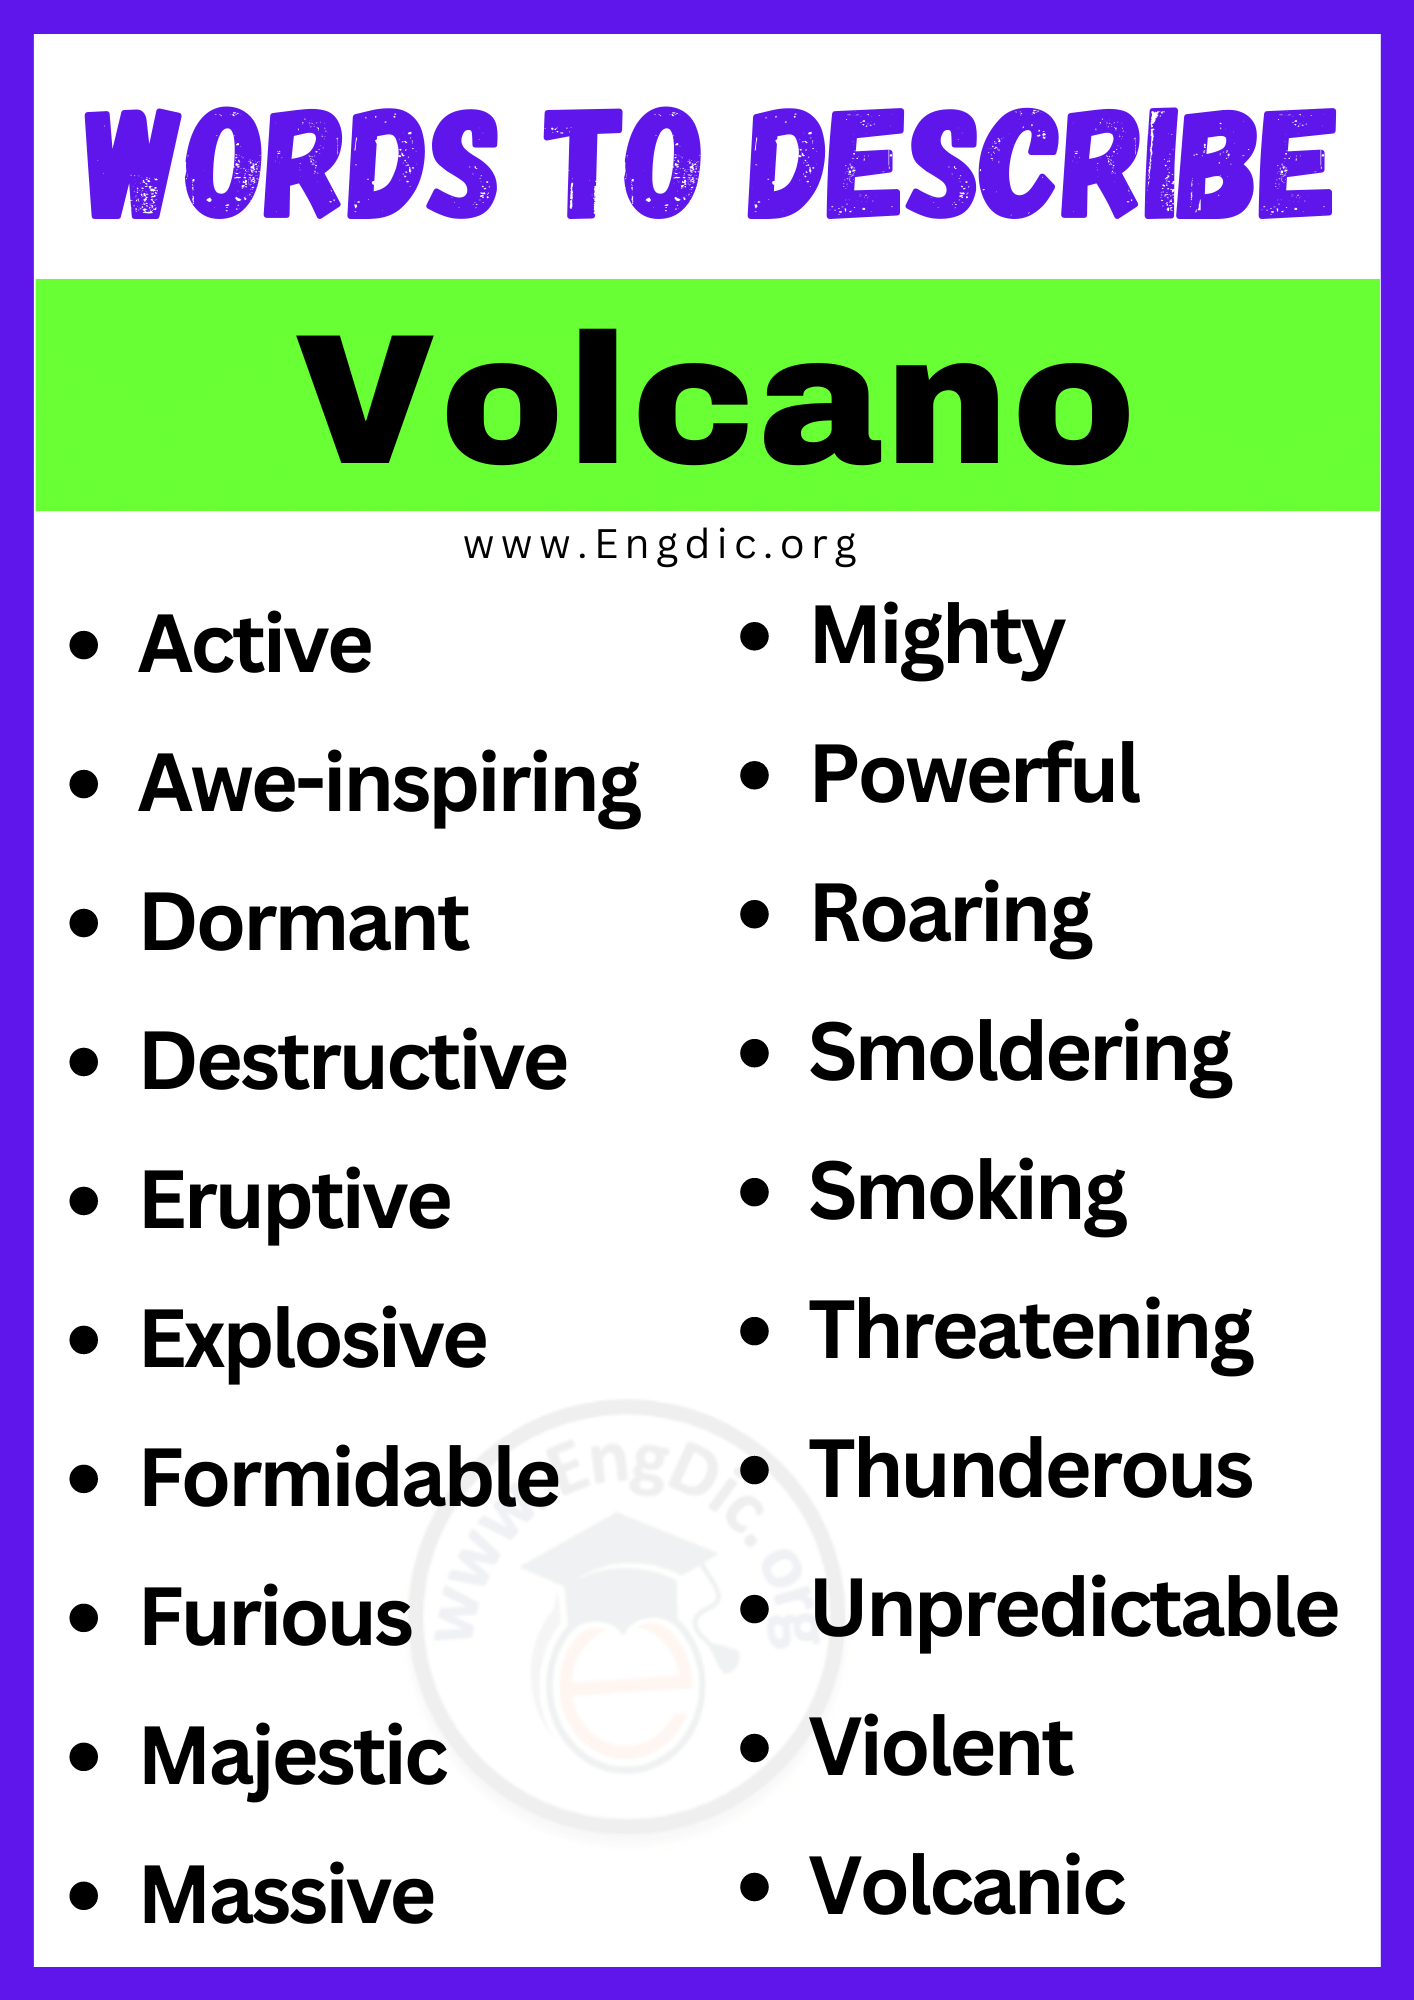 Words to Describe Volcano